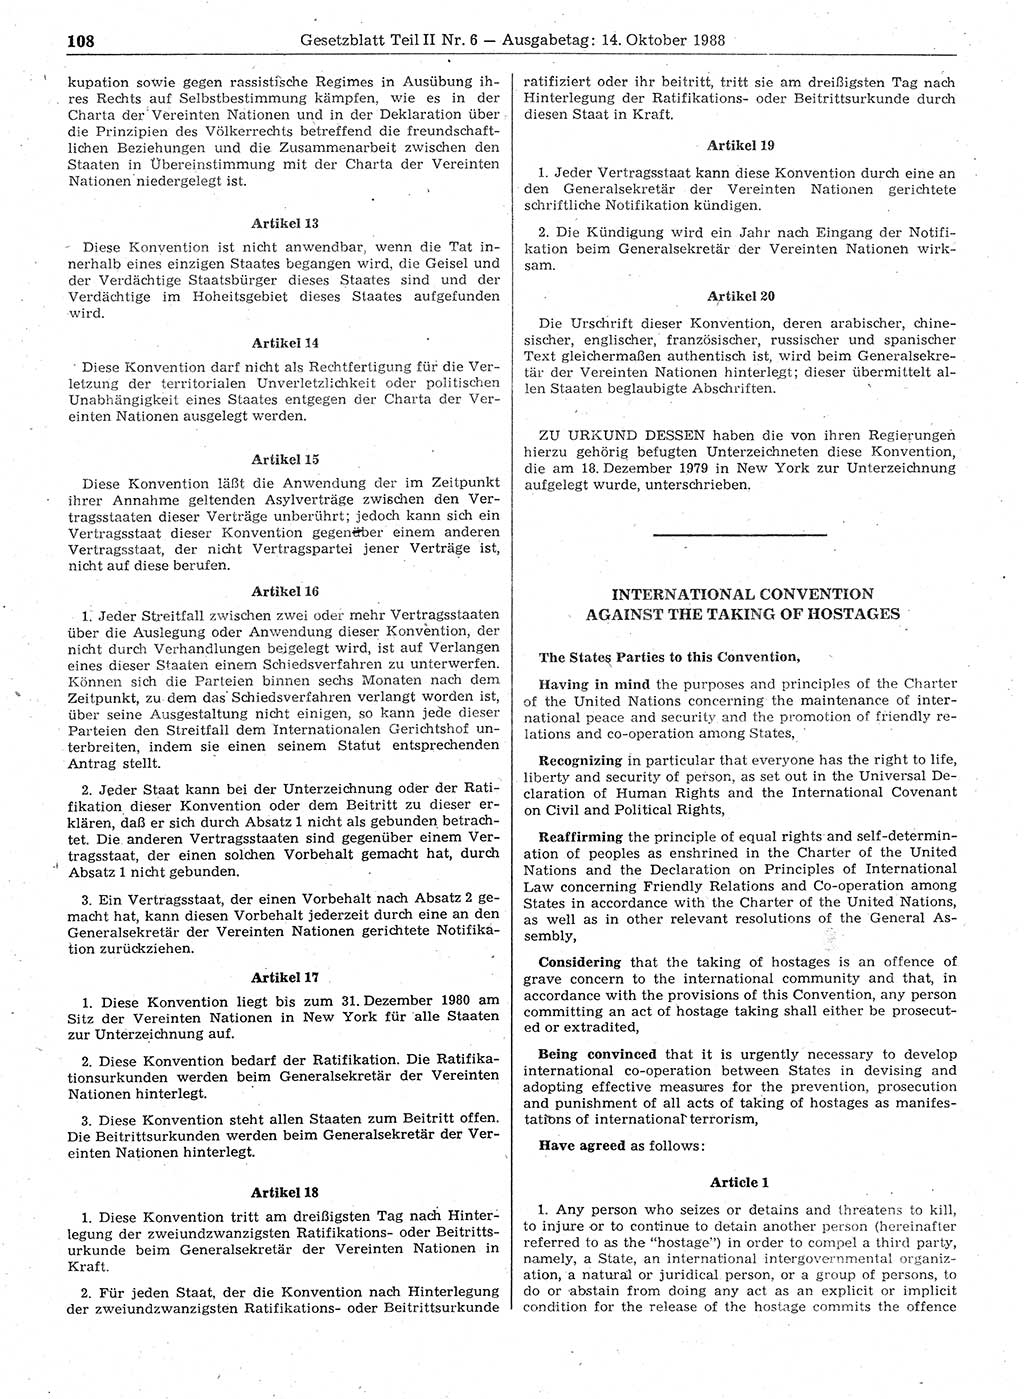 Gesetzblatt (GBl.) der Deutschen Demokratischen Republik (DDR) Teil ⅠⅠ 1988, Seite 108 (GBl. DDR ⅠⅠ 1988, S. 108)